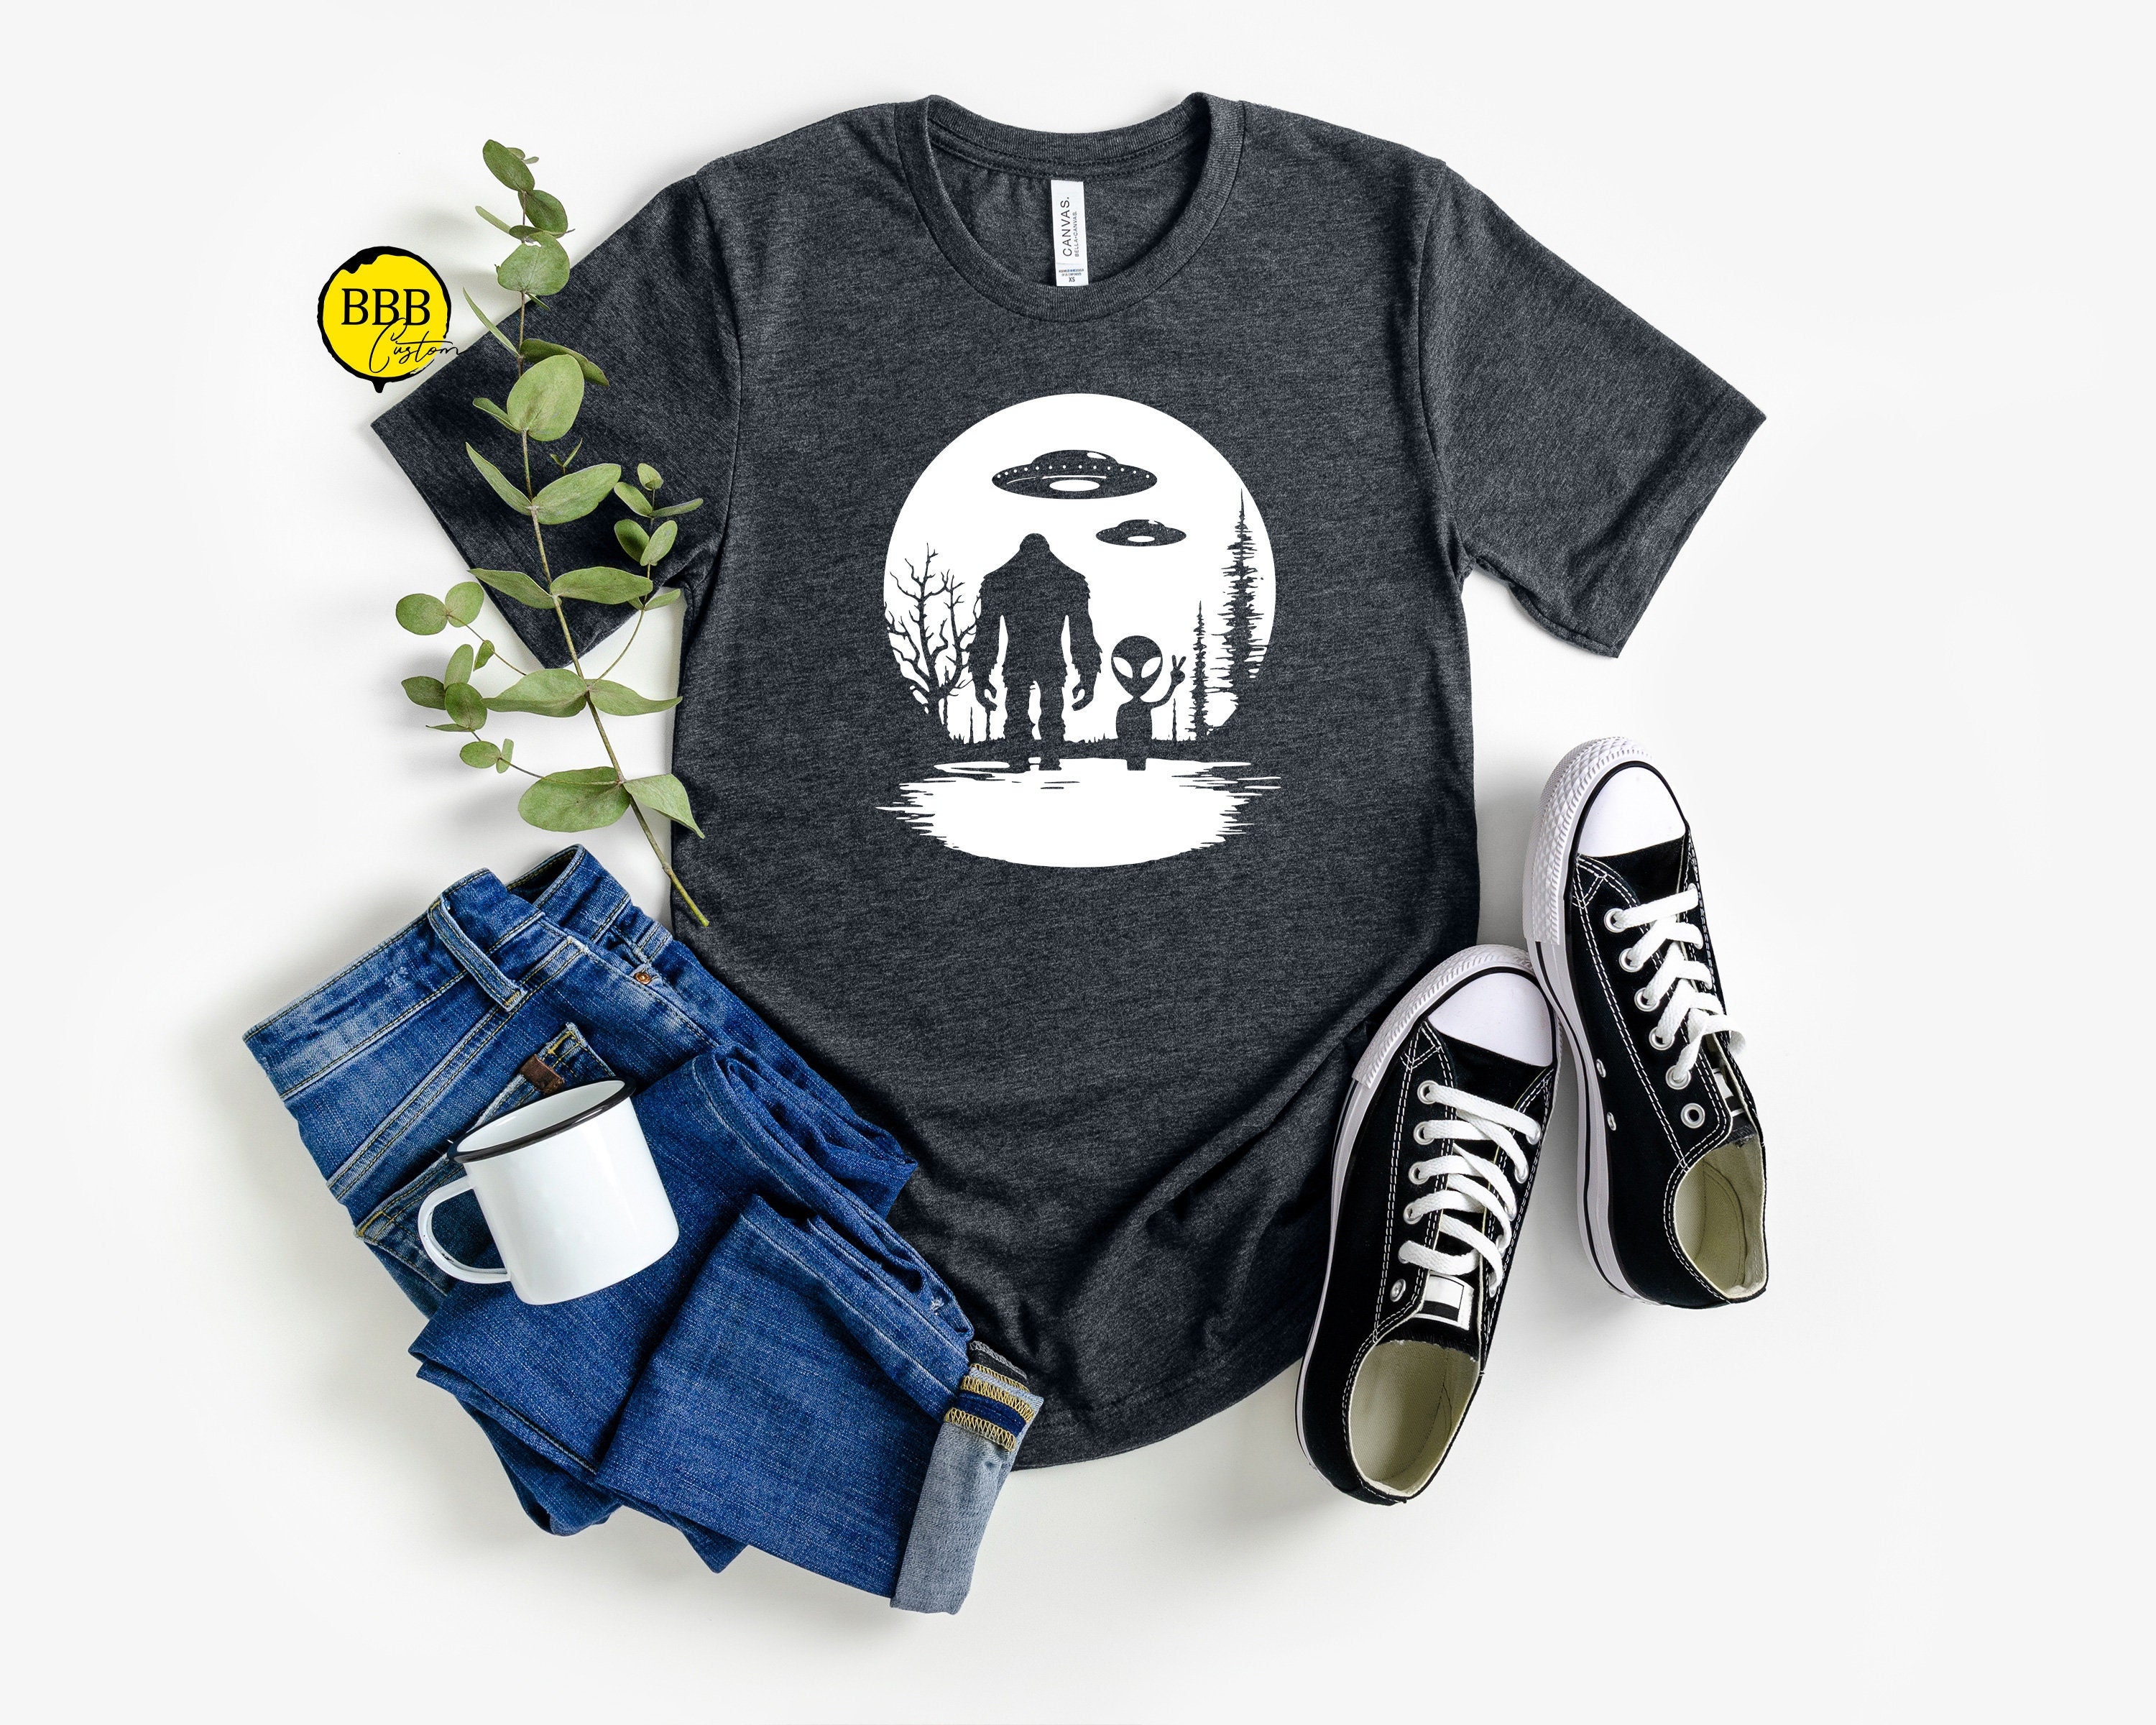 Bigfoot Alien Shirt, Sasquatch Shirt, Funny Bigfoot Shirt, Hiking Shirt